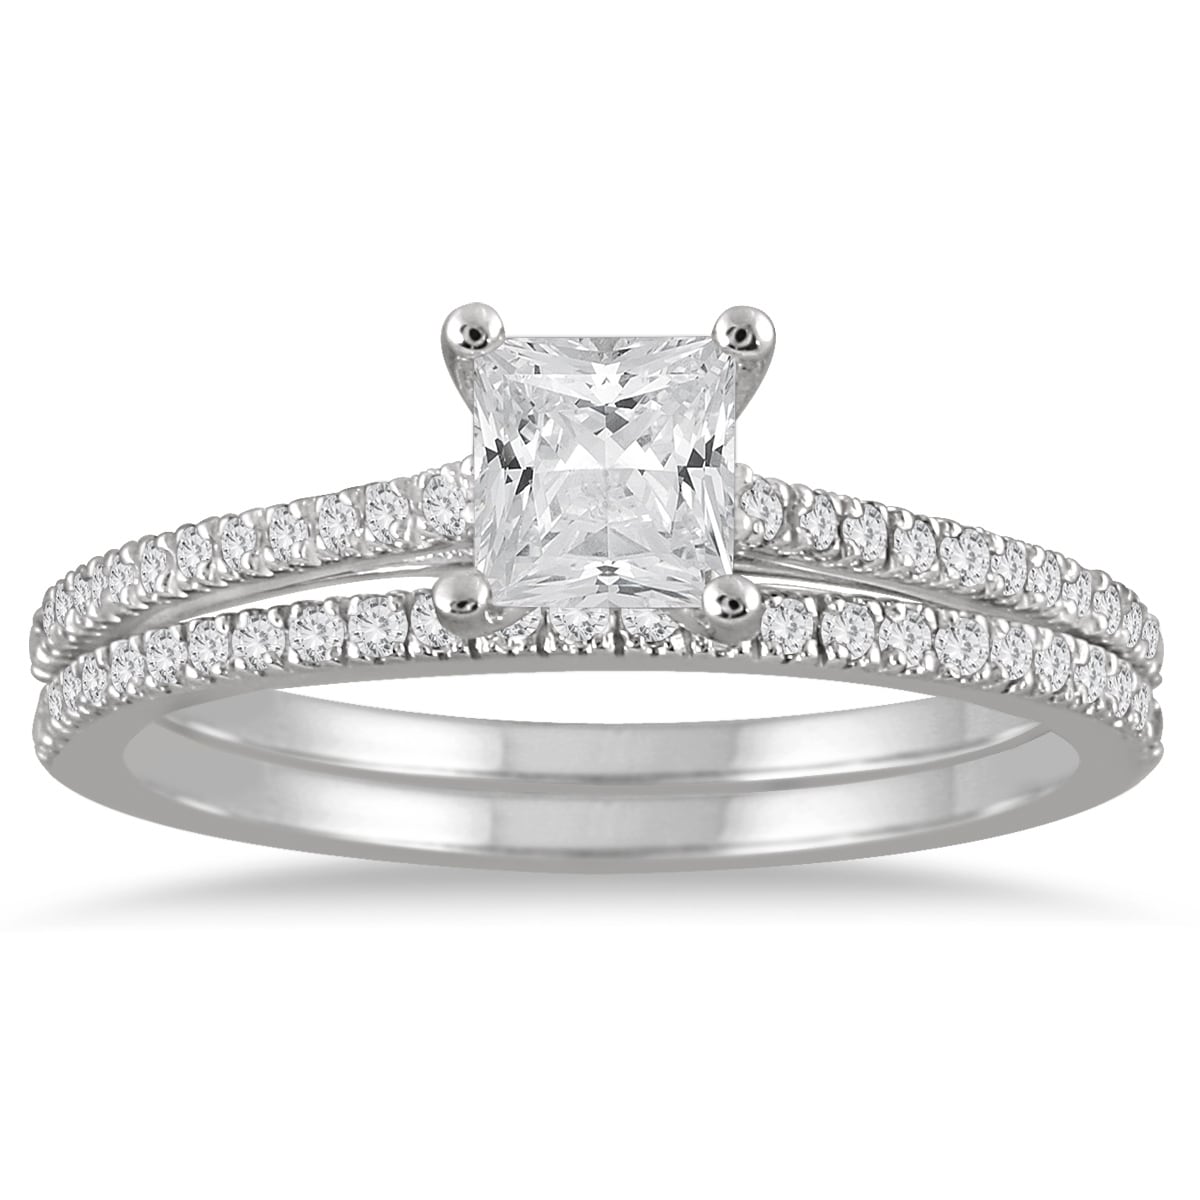 14K White Gold 2 CT Princess Engagement Ring Set Wedding Band Size 5-9 4.8 gram